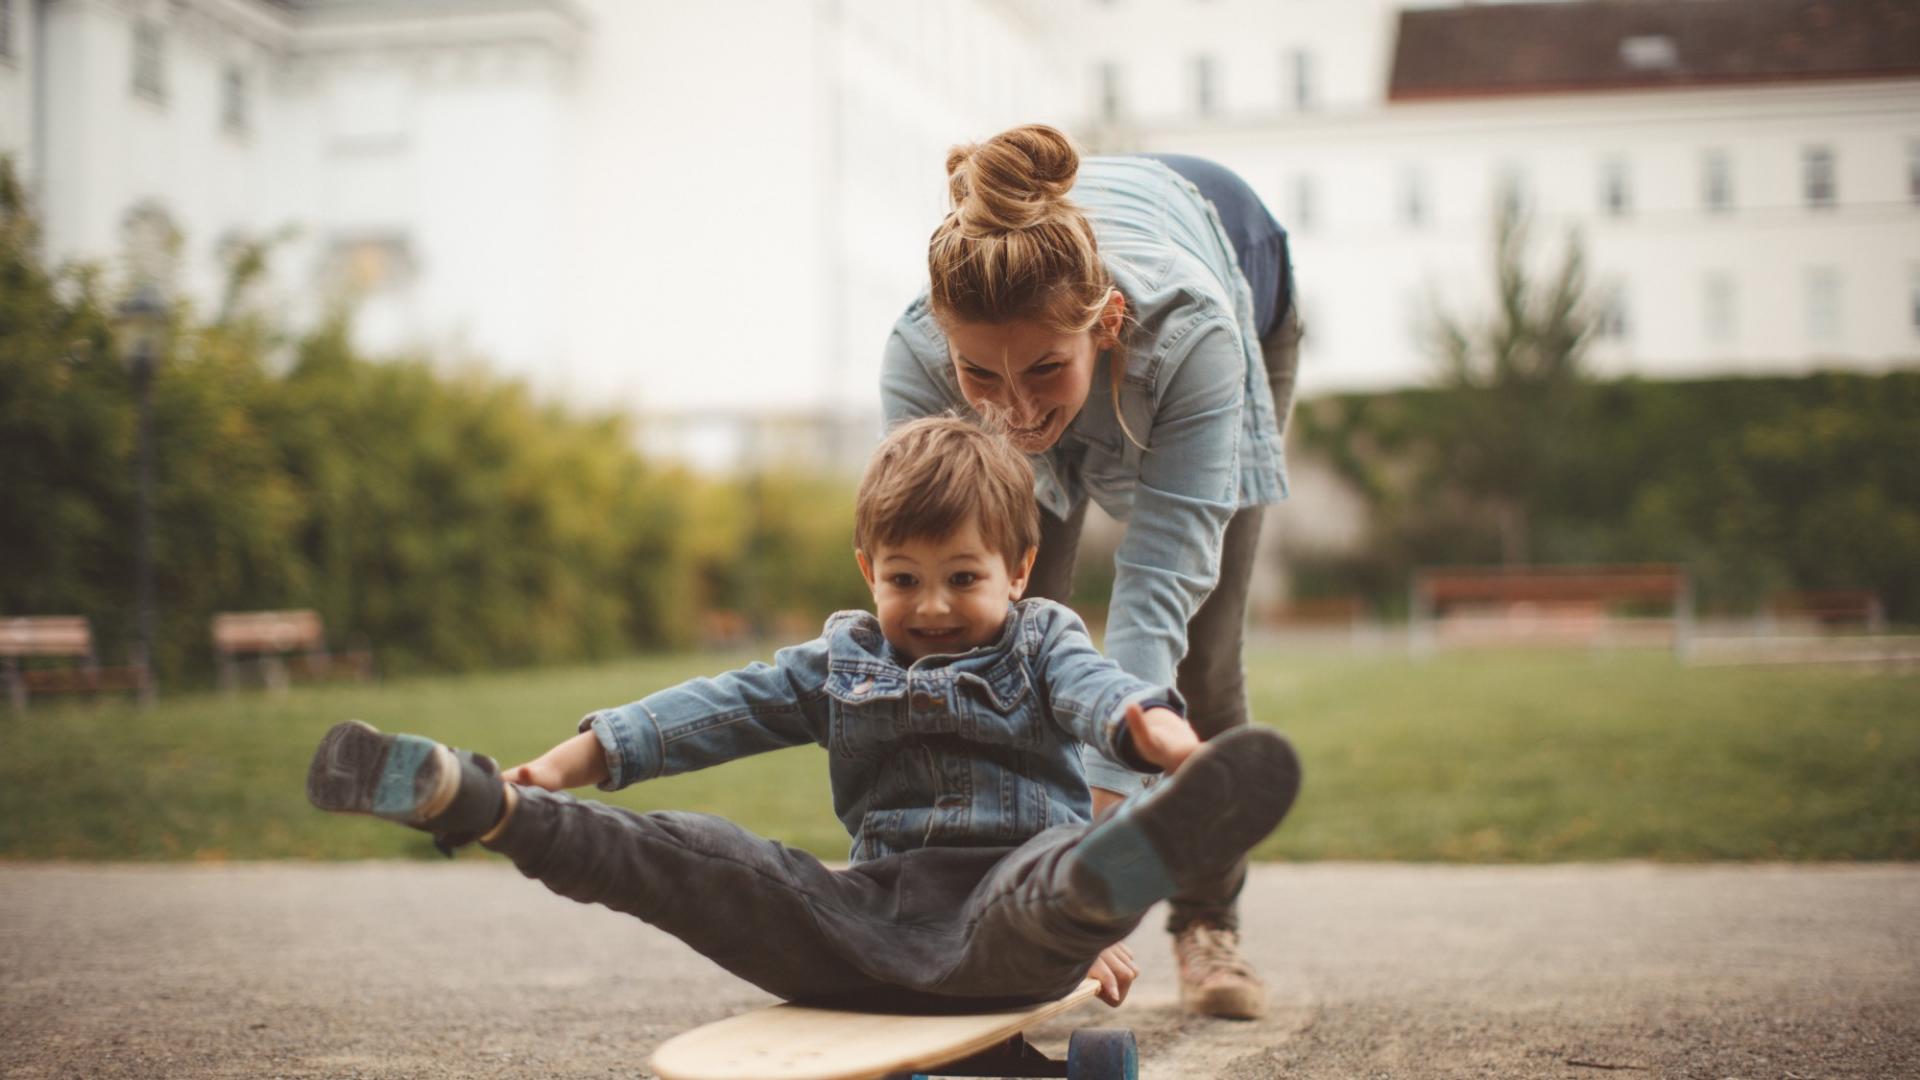 Eine Mutter schiebt ihren Sohn auf einem Skateboard. Im Hintergrund sind Häuser zu sehen.